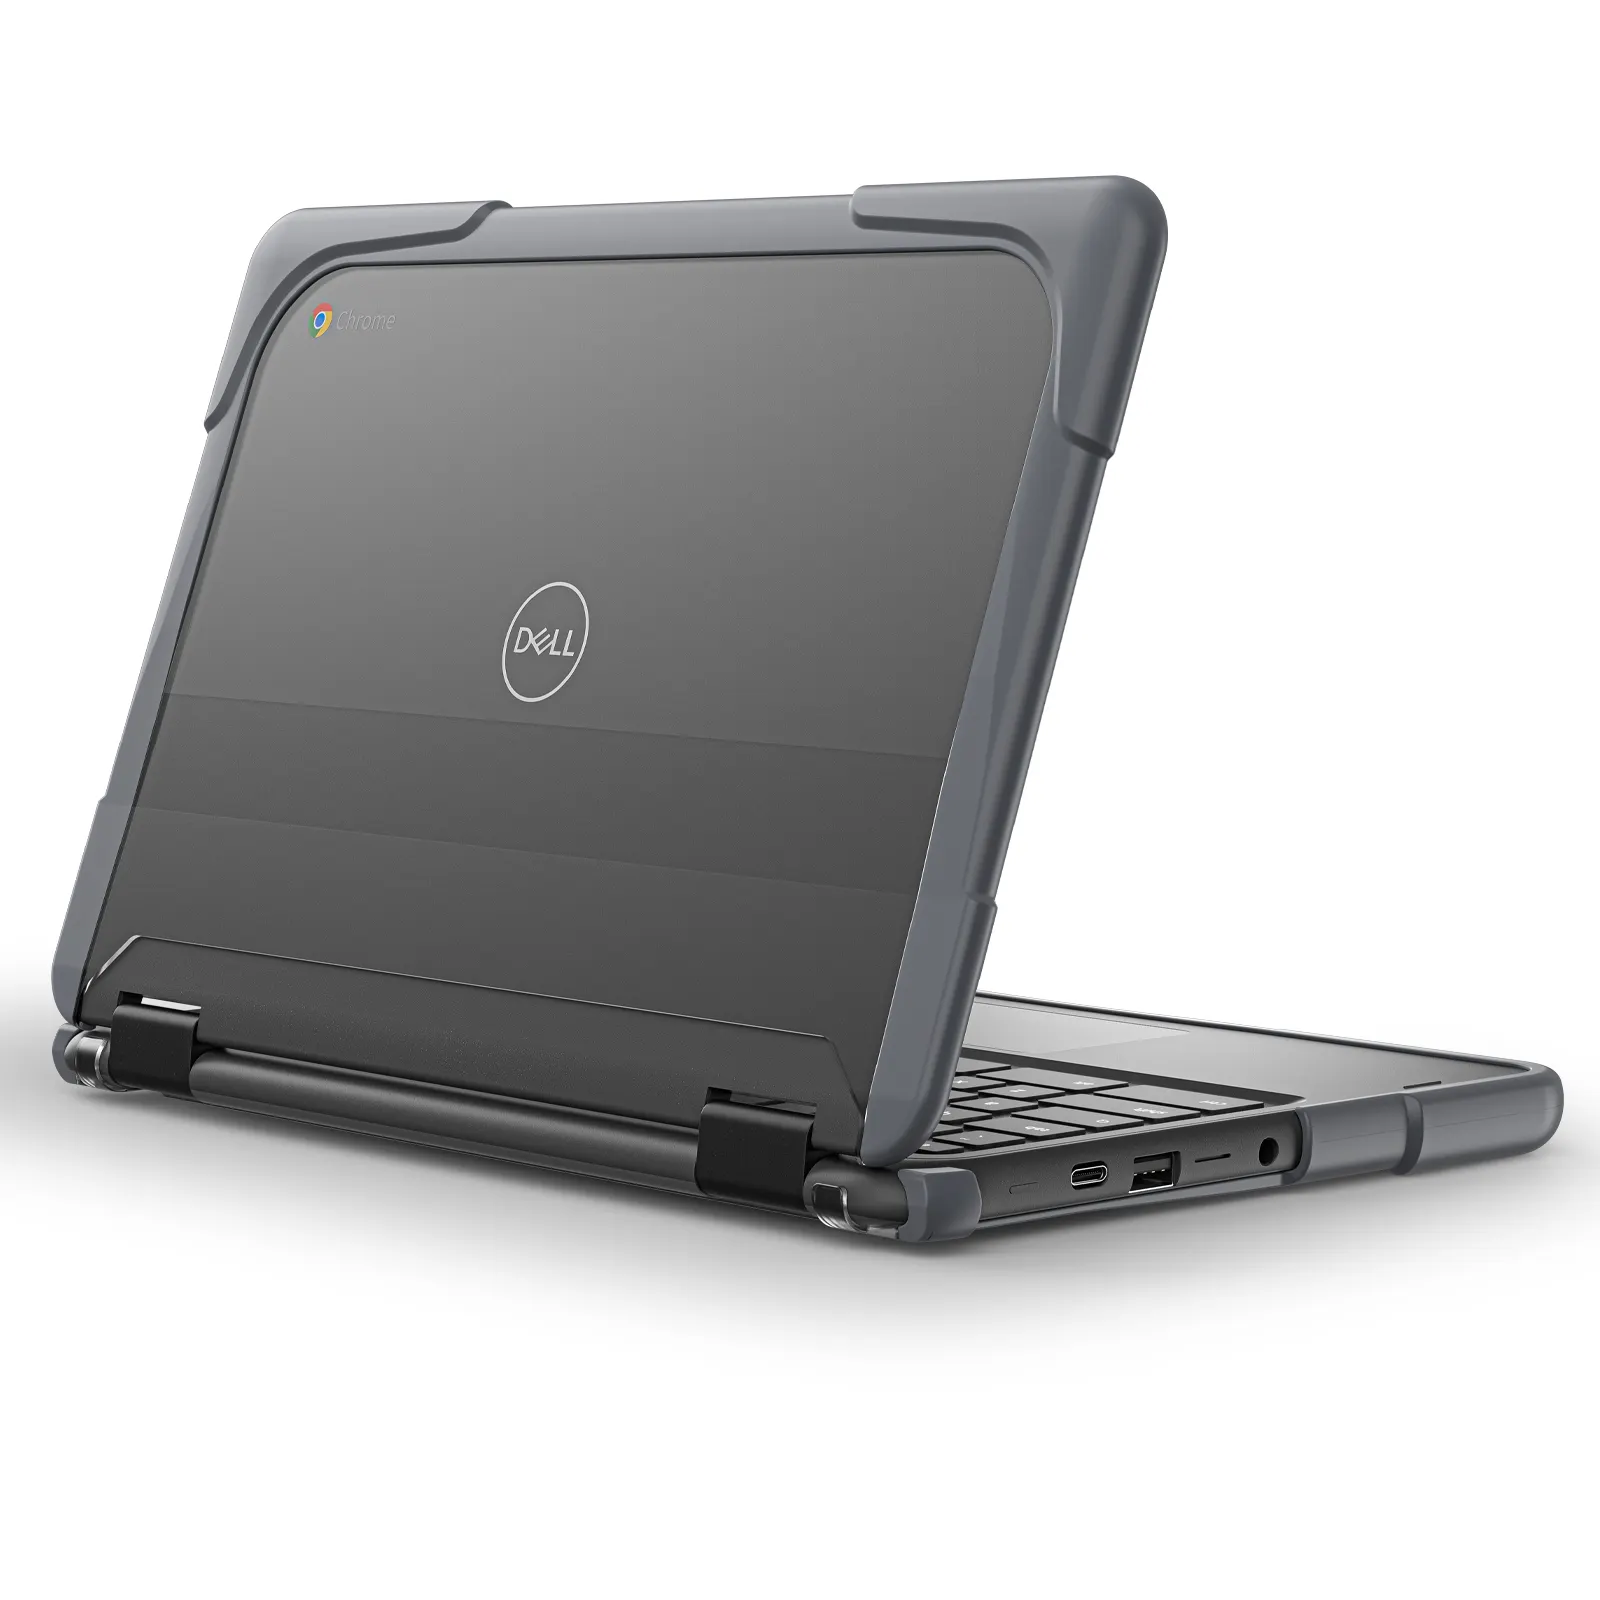 Atacado À Prova De Choque Laptop Capa Para Dell Chromebook 11 11.6 polegada 3100 3110 Protetor Hard Case com Buracos De Refrigeração